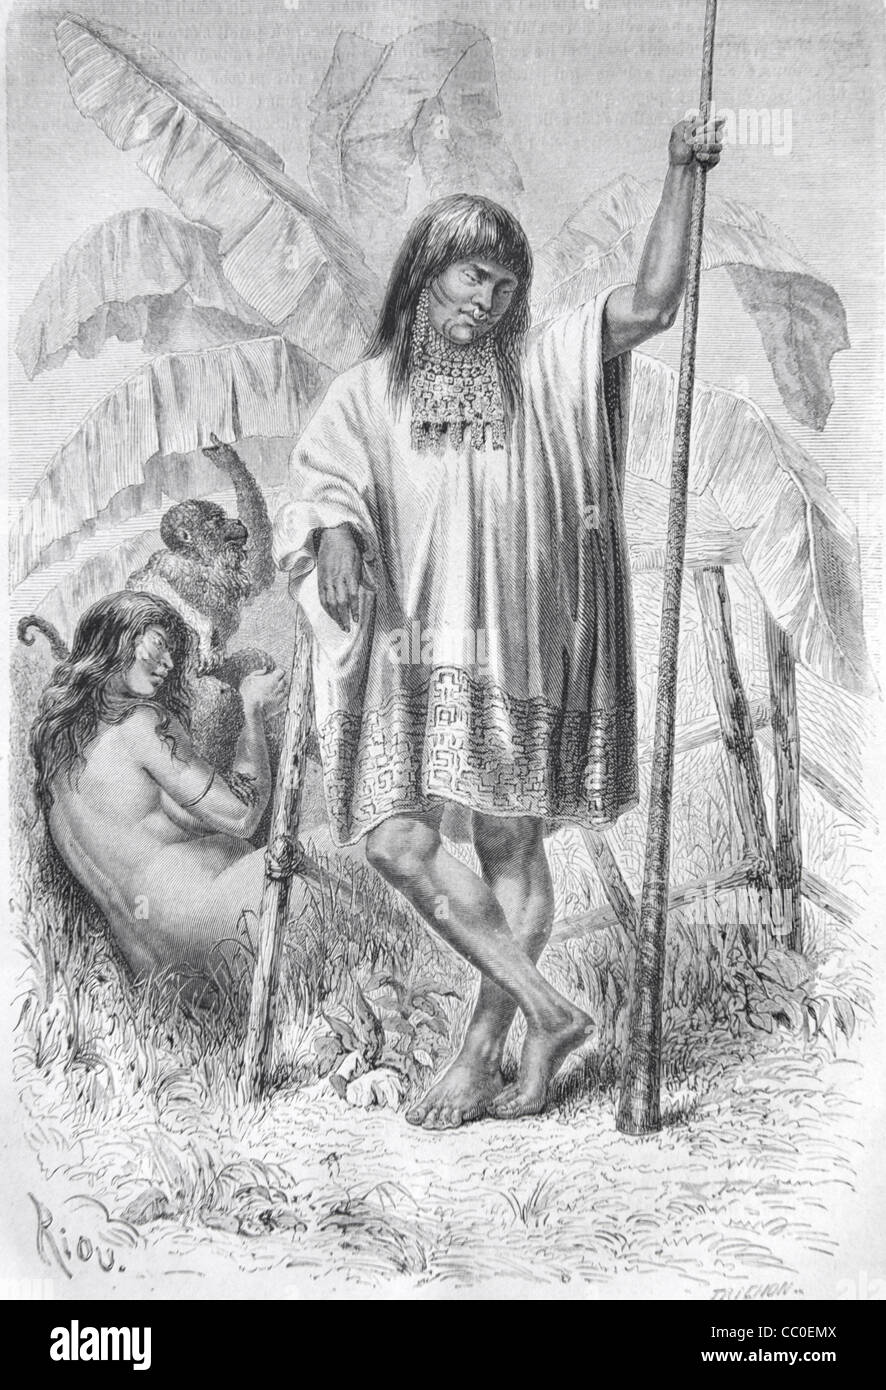 Shipibo o Conibo Amerindian o nativo Americano Indiano dell'Amazzonia peruviana, Perù, Sud America. 1864 incisione o illustrazione d'epoca Foto Stock